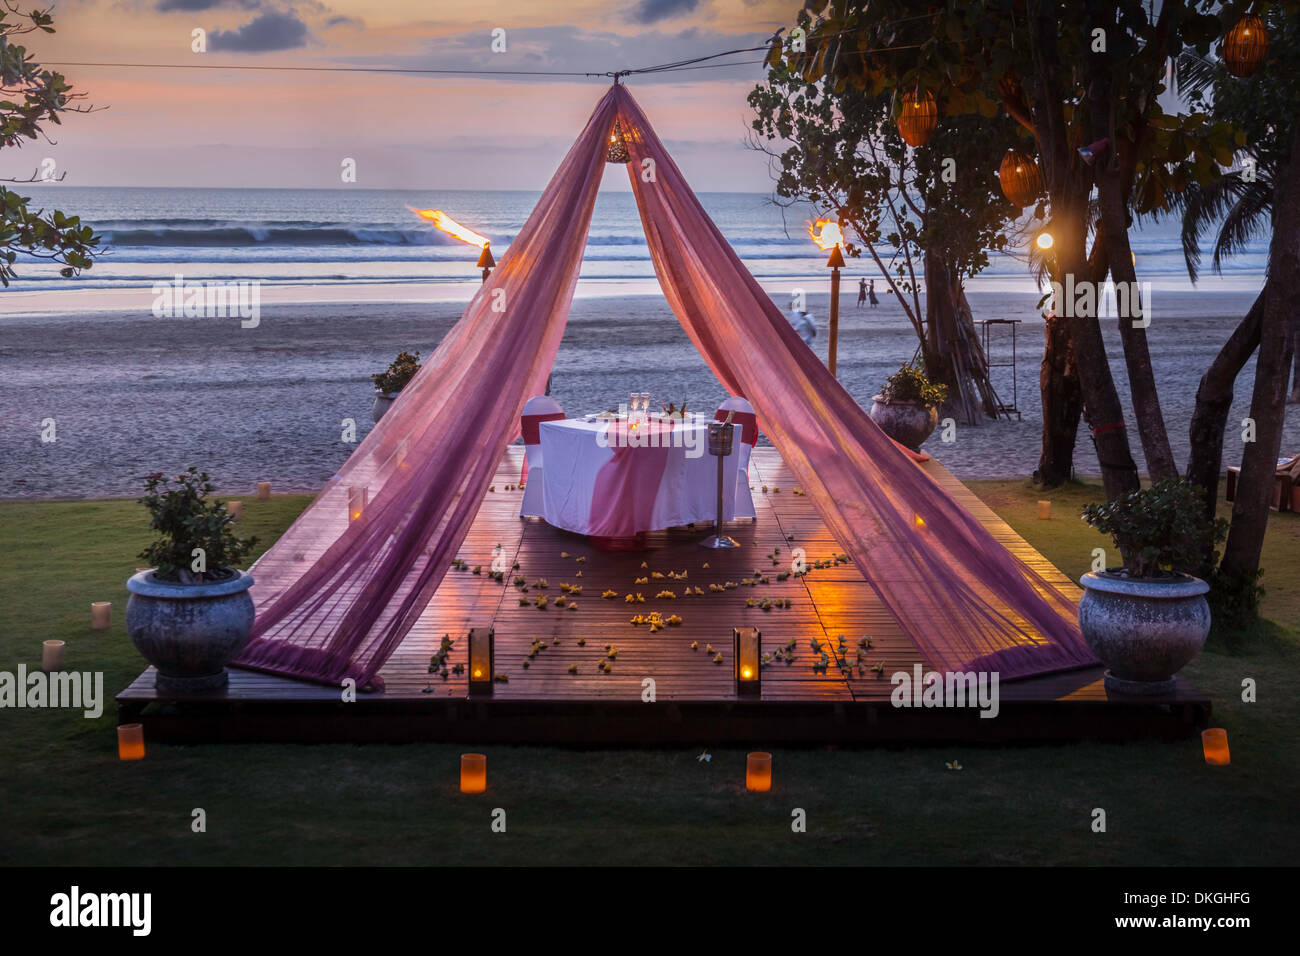 Romantischer Tisch zwei Pärchen Bali Strand Kerze Platten Essen Sonnenuntergang Asien rosa Vorhang Luxus Service Angebot touristischer Art hotel Stockfoto